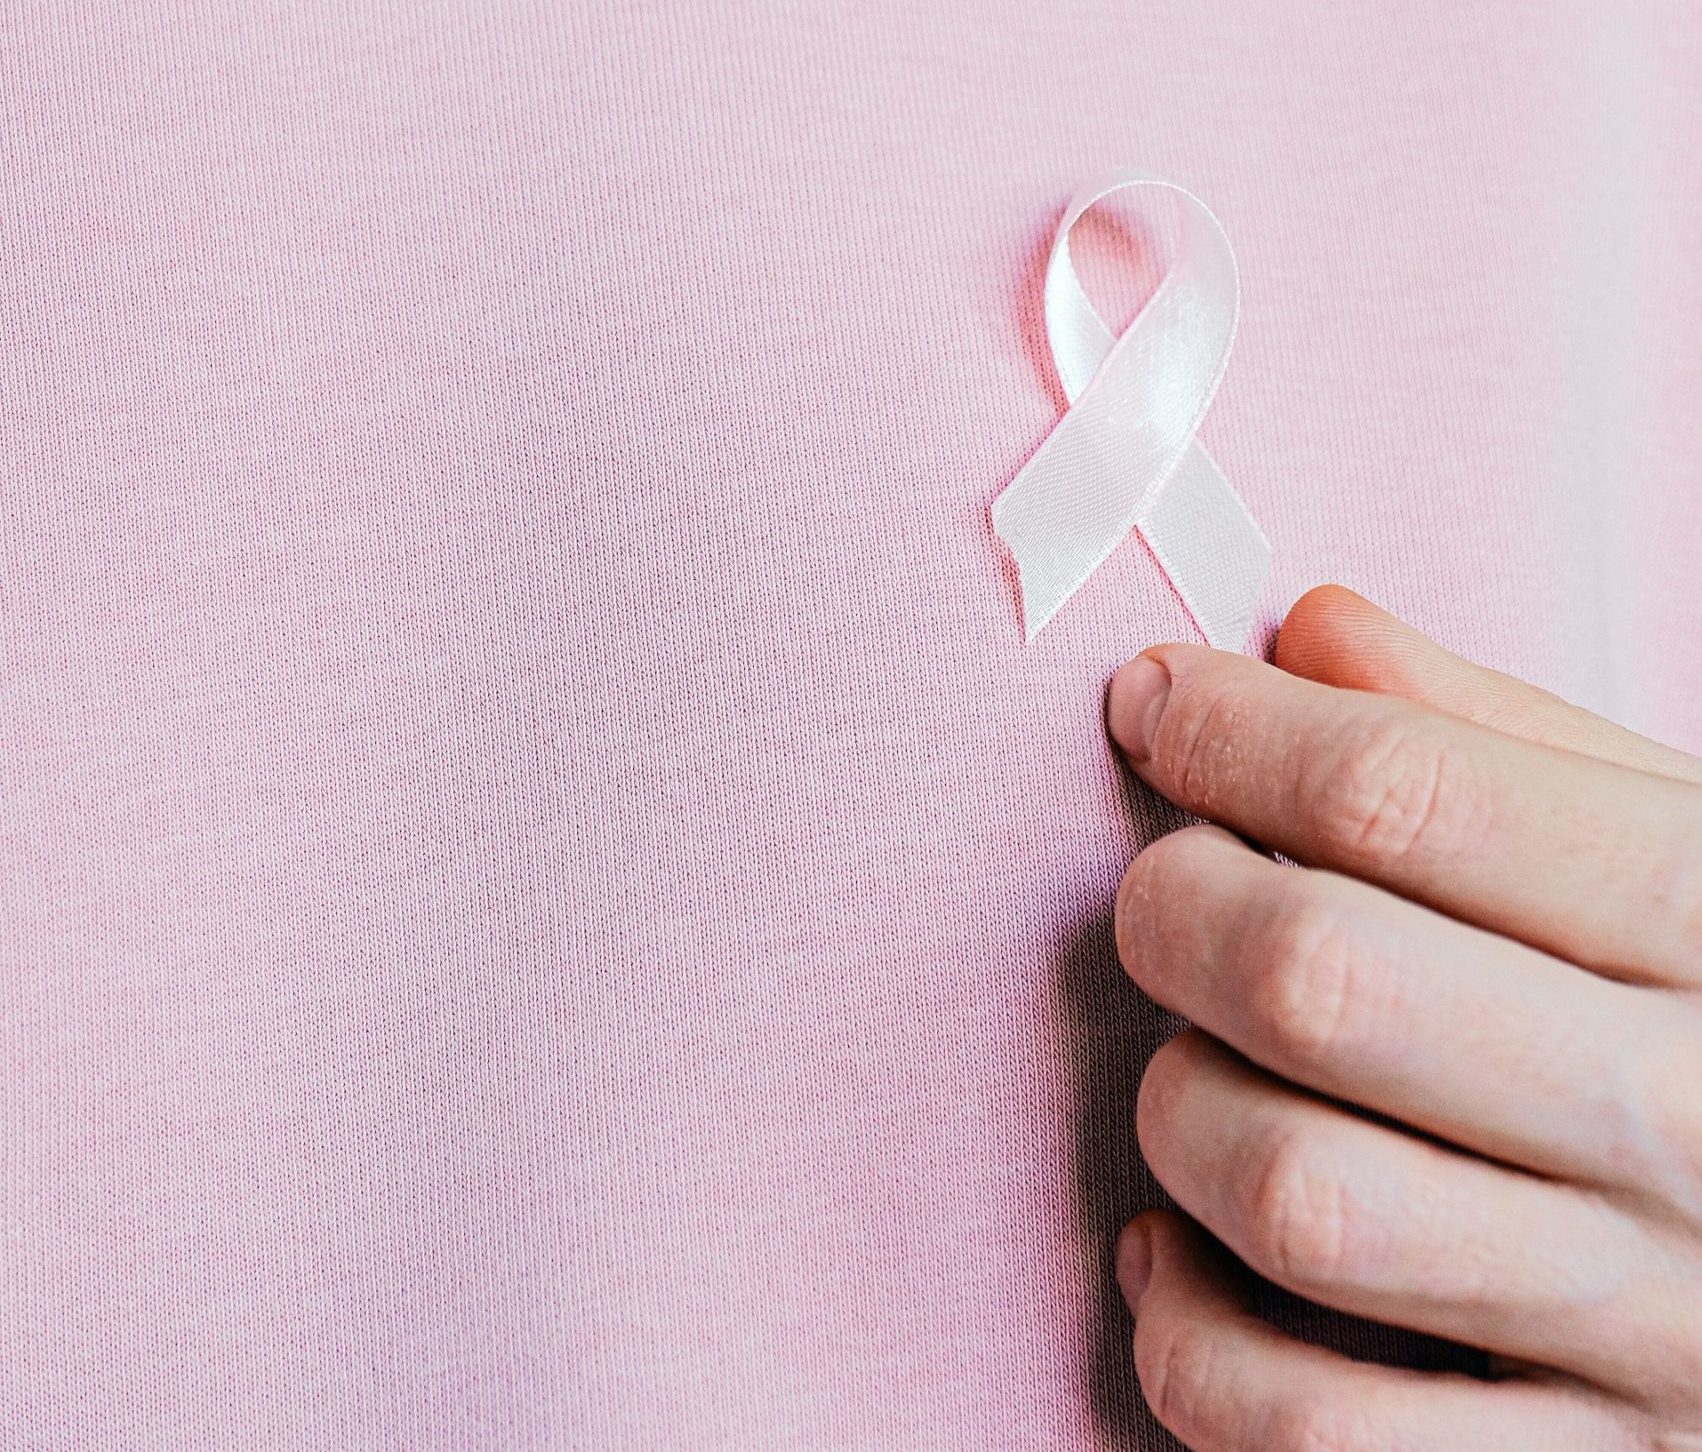 El estudio de la TAU se basó en los descubrimientos de un estudio internacional que identificó variantes asociadas con el cáncer de mama mediante el análisis de los perfiles genéticos de aproximadamente 130.000 pacientes con cáncer de mama, junto con el perfil genético de mujeres sanas que sirvieron como grupo de control. Foto: Anna Shvets/Pexels.